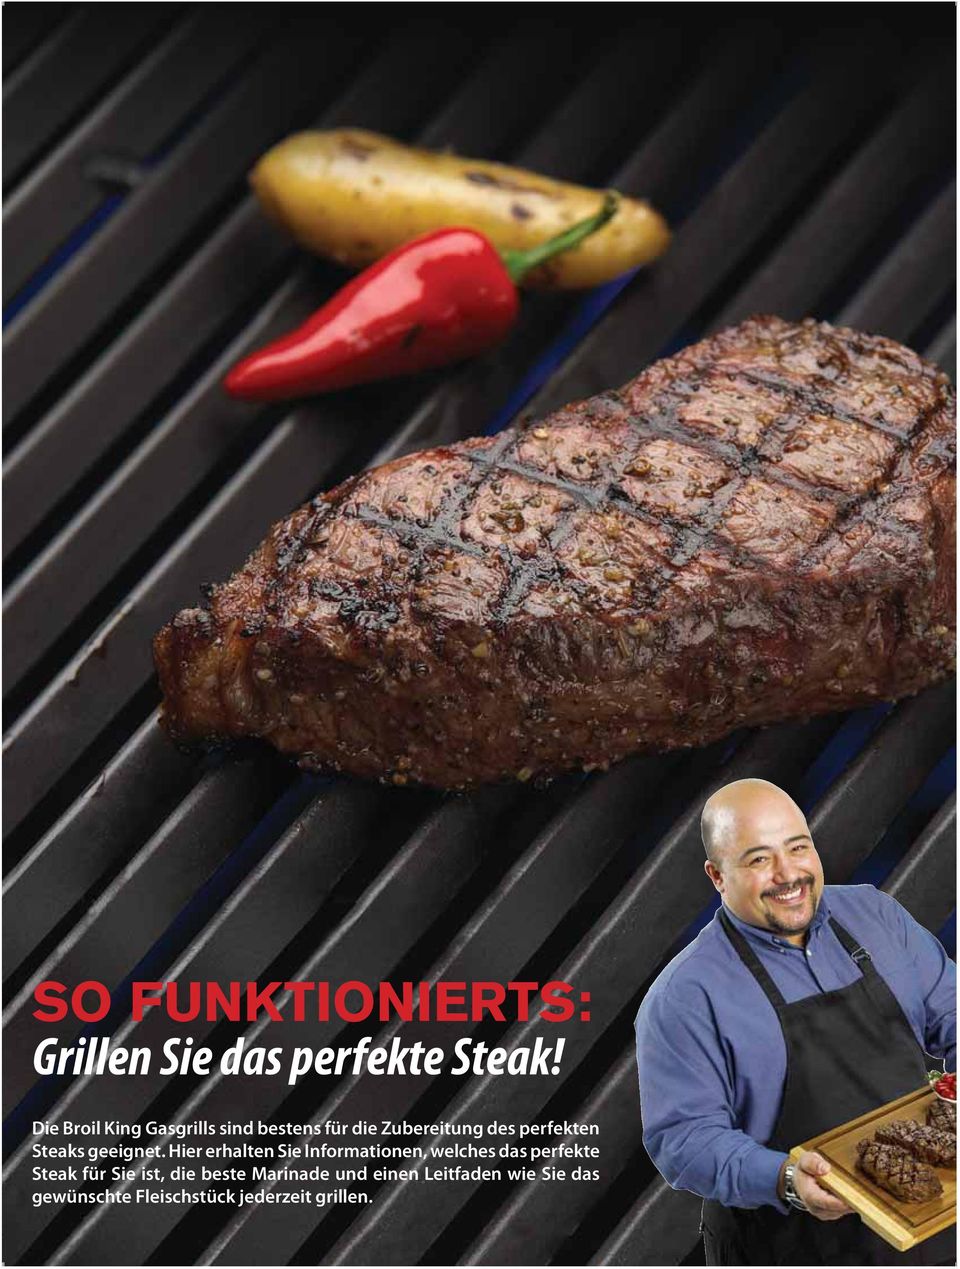 Hier erhalten Sie Informationen, welches das perfekte Steak für Sie ist, die beste